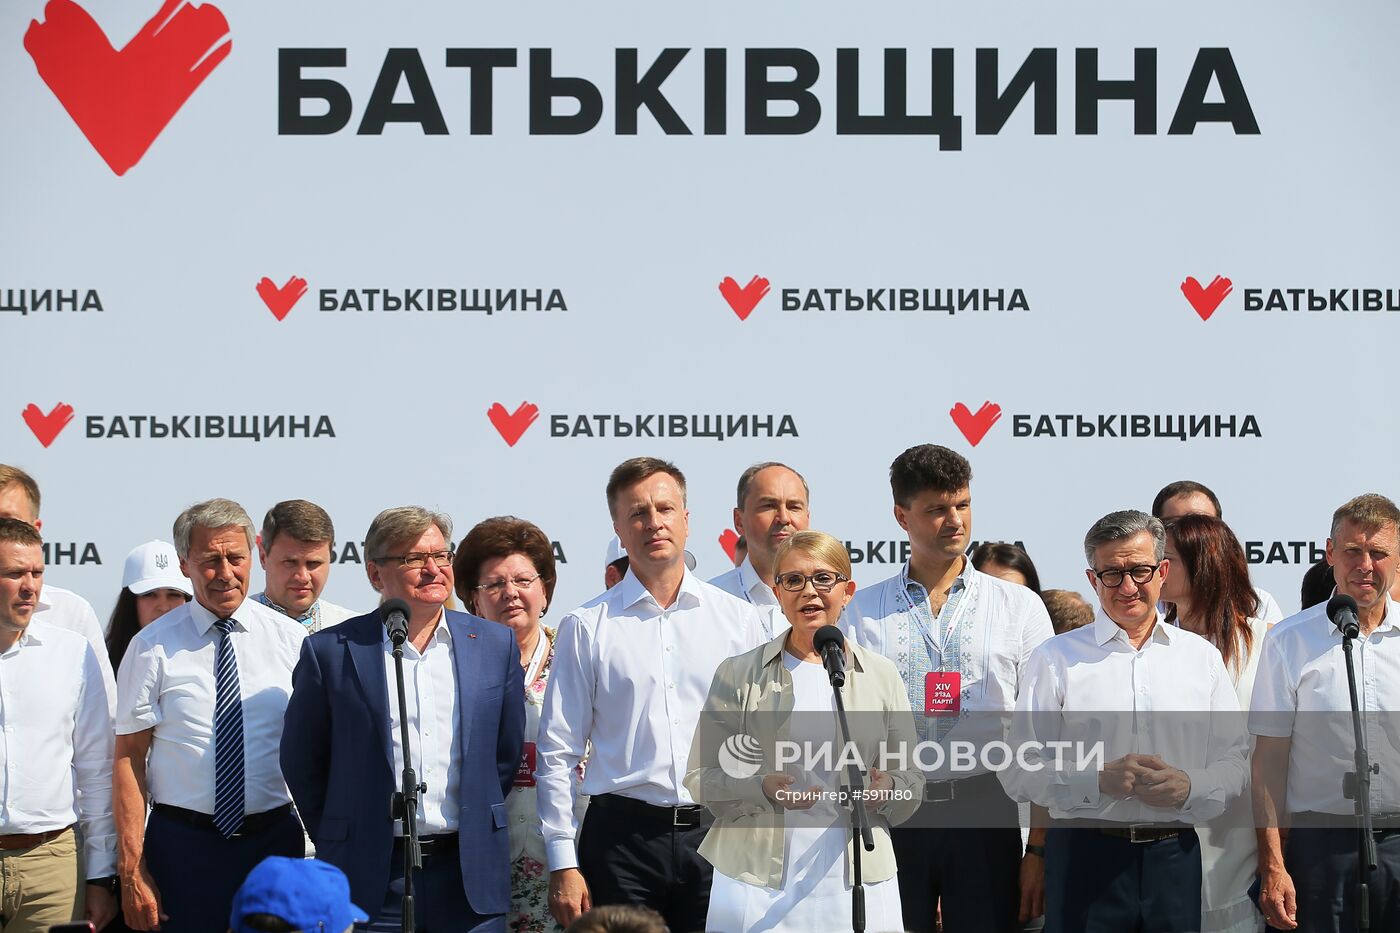 Съезд партии "Батькивщина" в Киеве